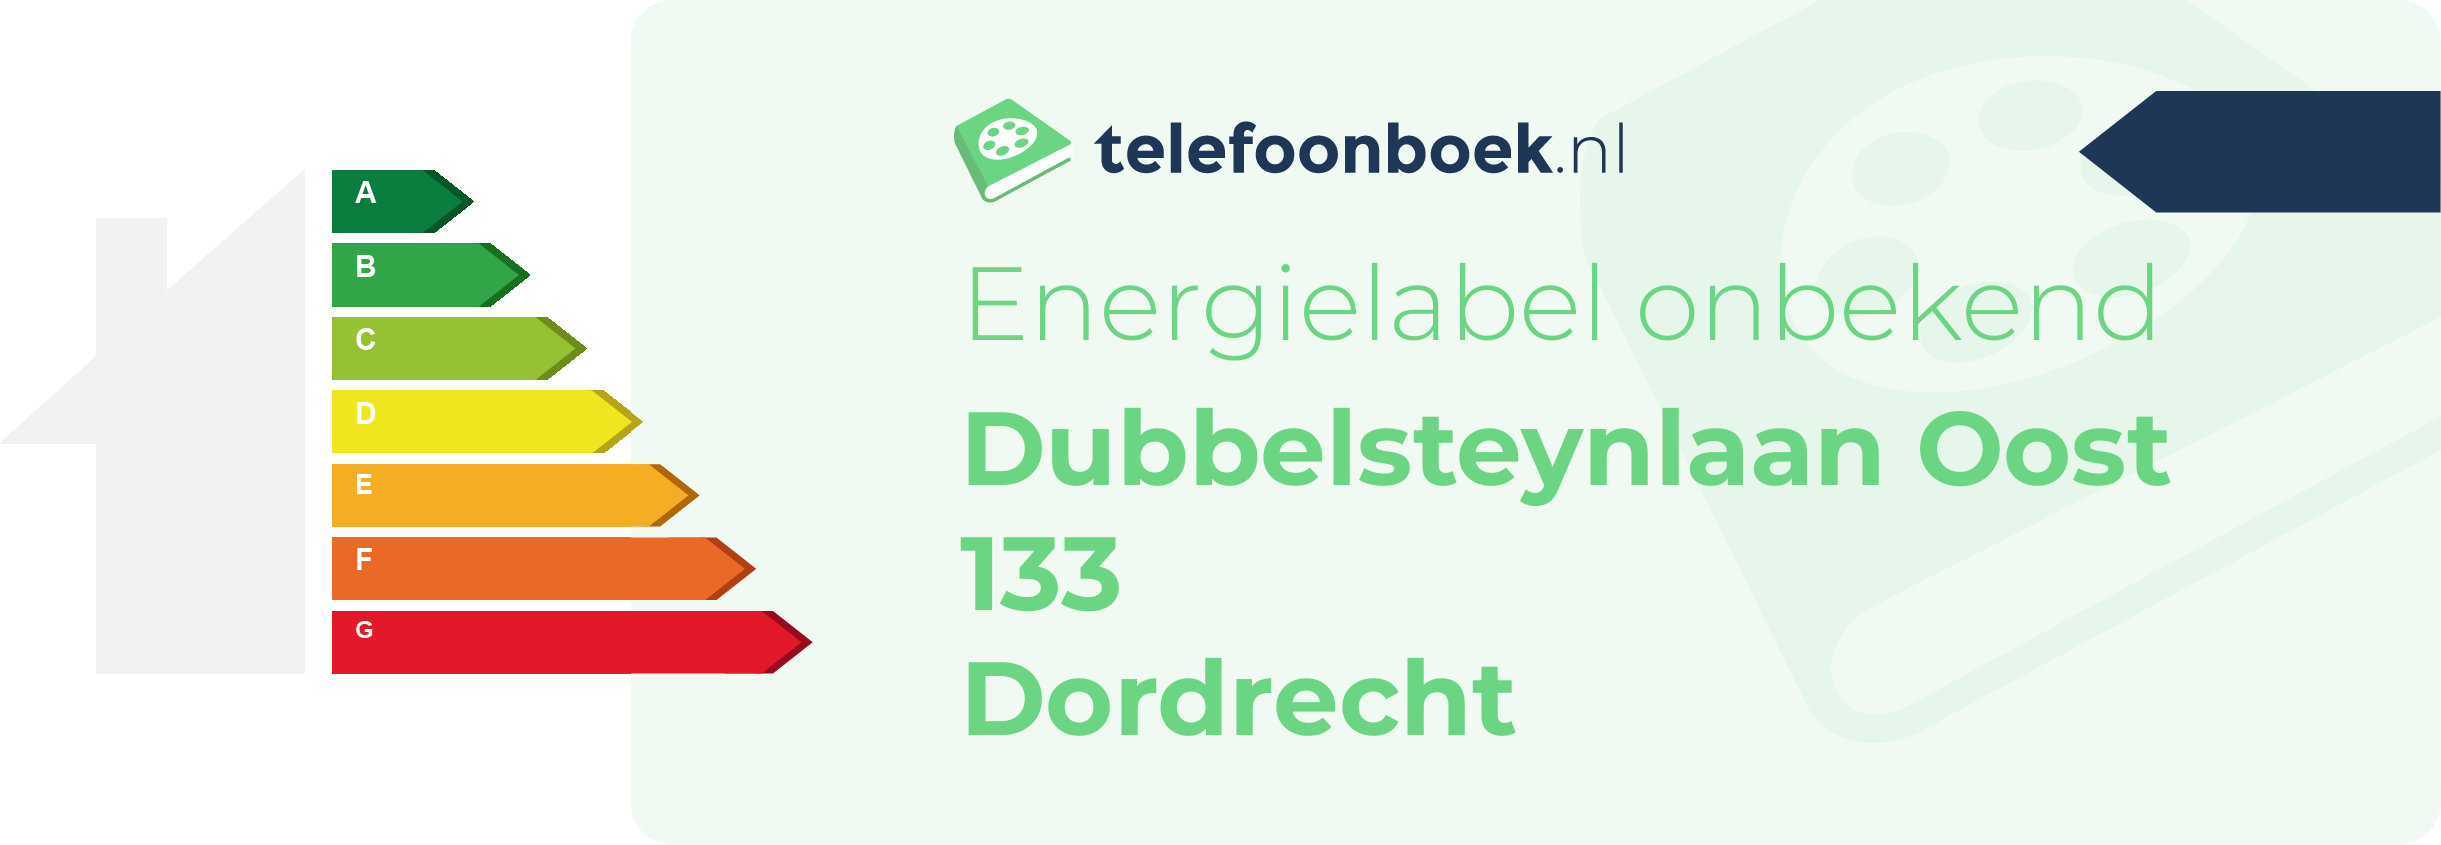 Energielabel Dubbelsteynlaan Oost 133 Dordrecht